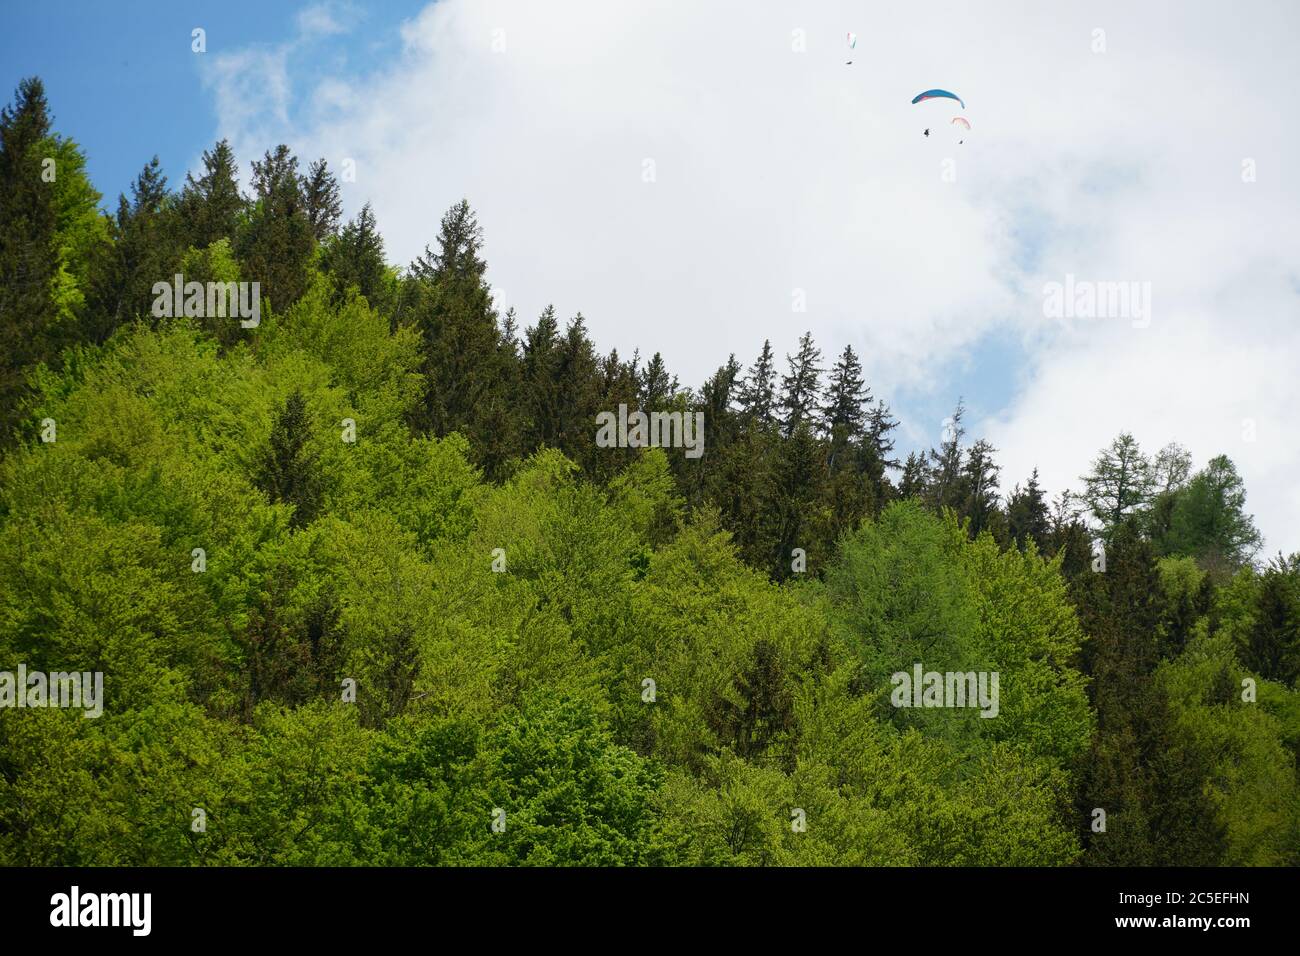 Mischwälder mit Gleitschirmfliegern, die unter wolkenvertrübt über dem Himmel verstreut fliegen. Der Wald ist in verschiedenen Grüntönen und die Gleitschirme sind farbenfroh. Stockfoto